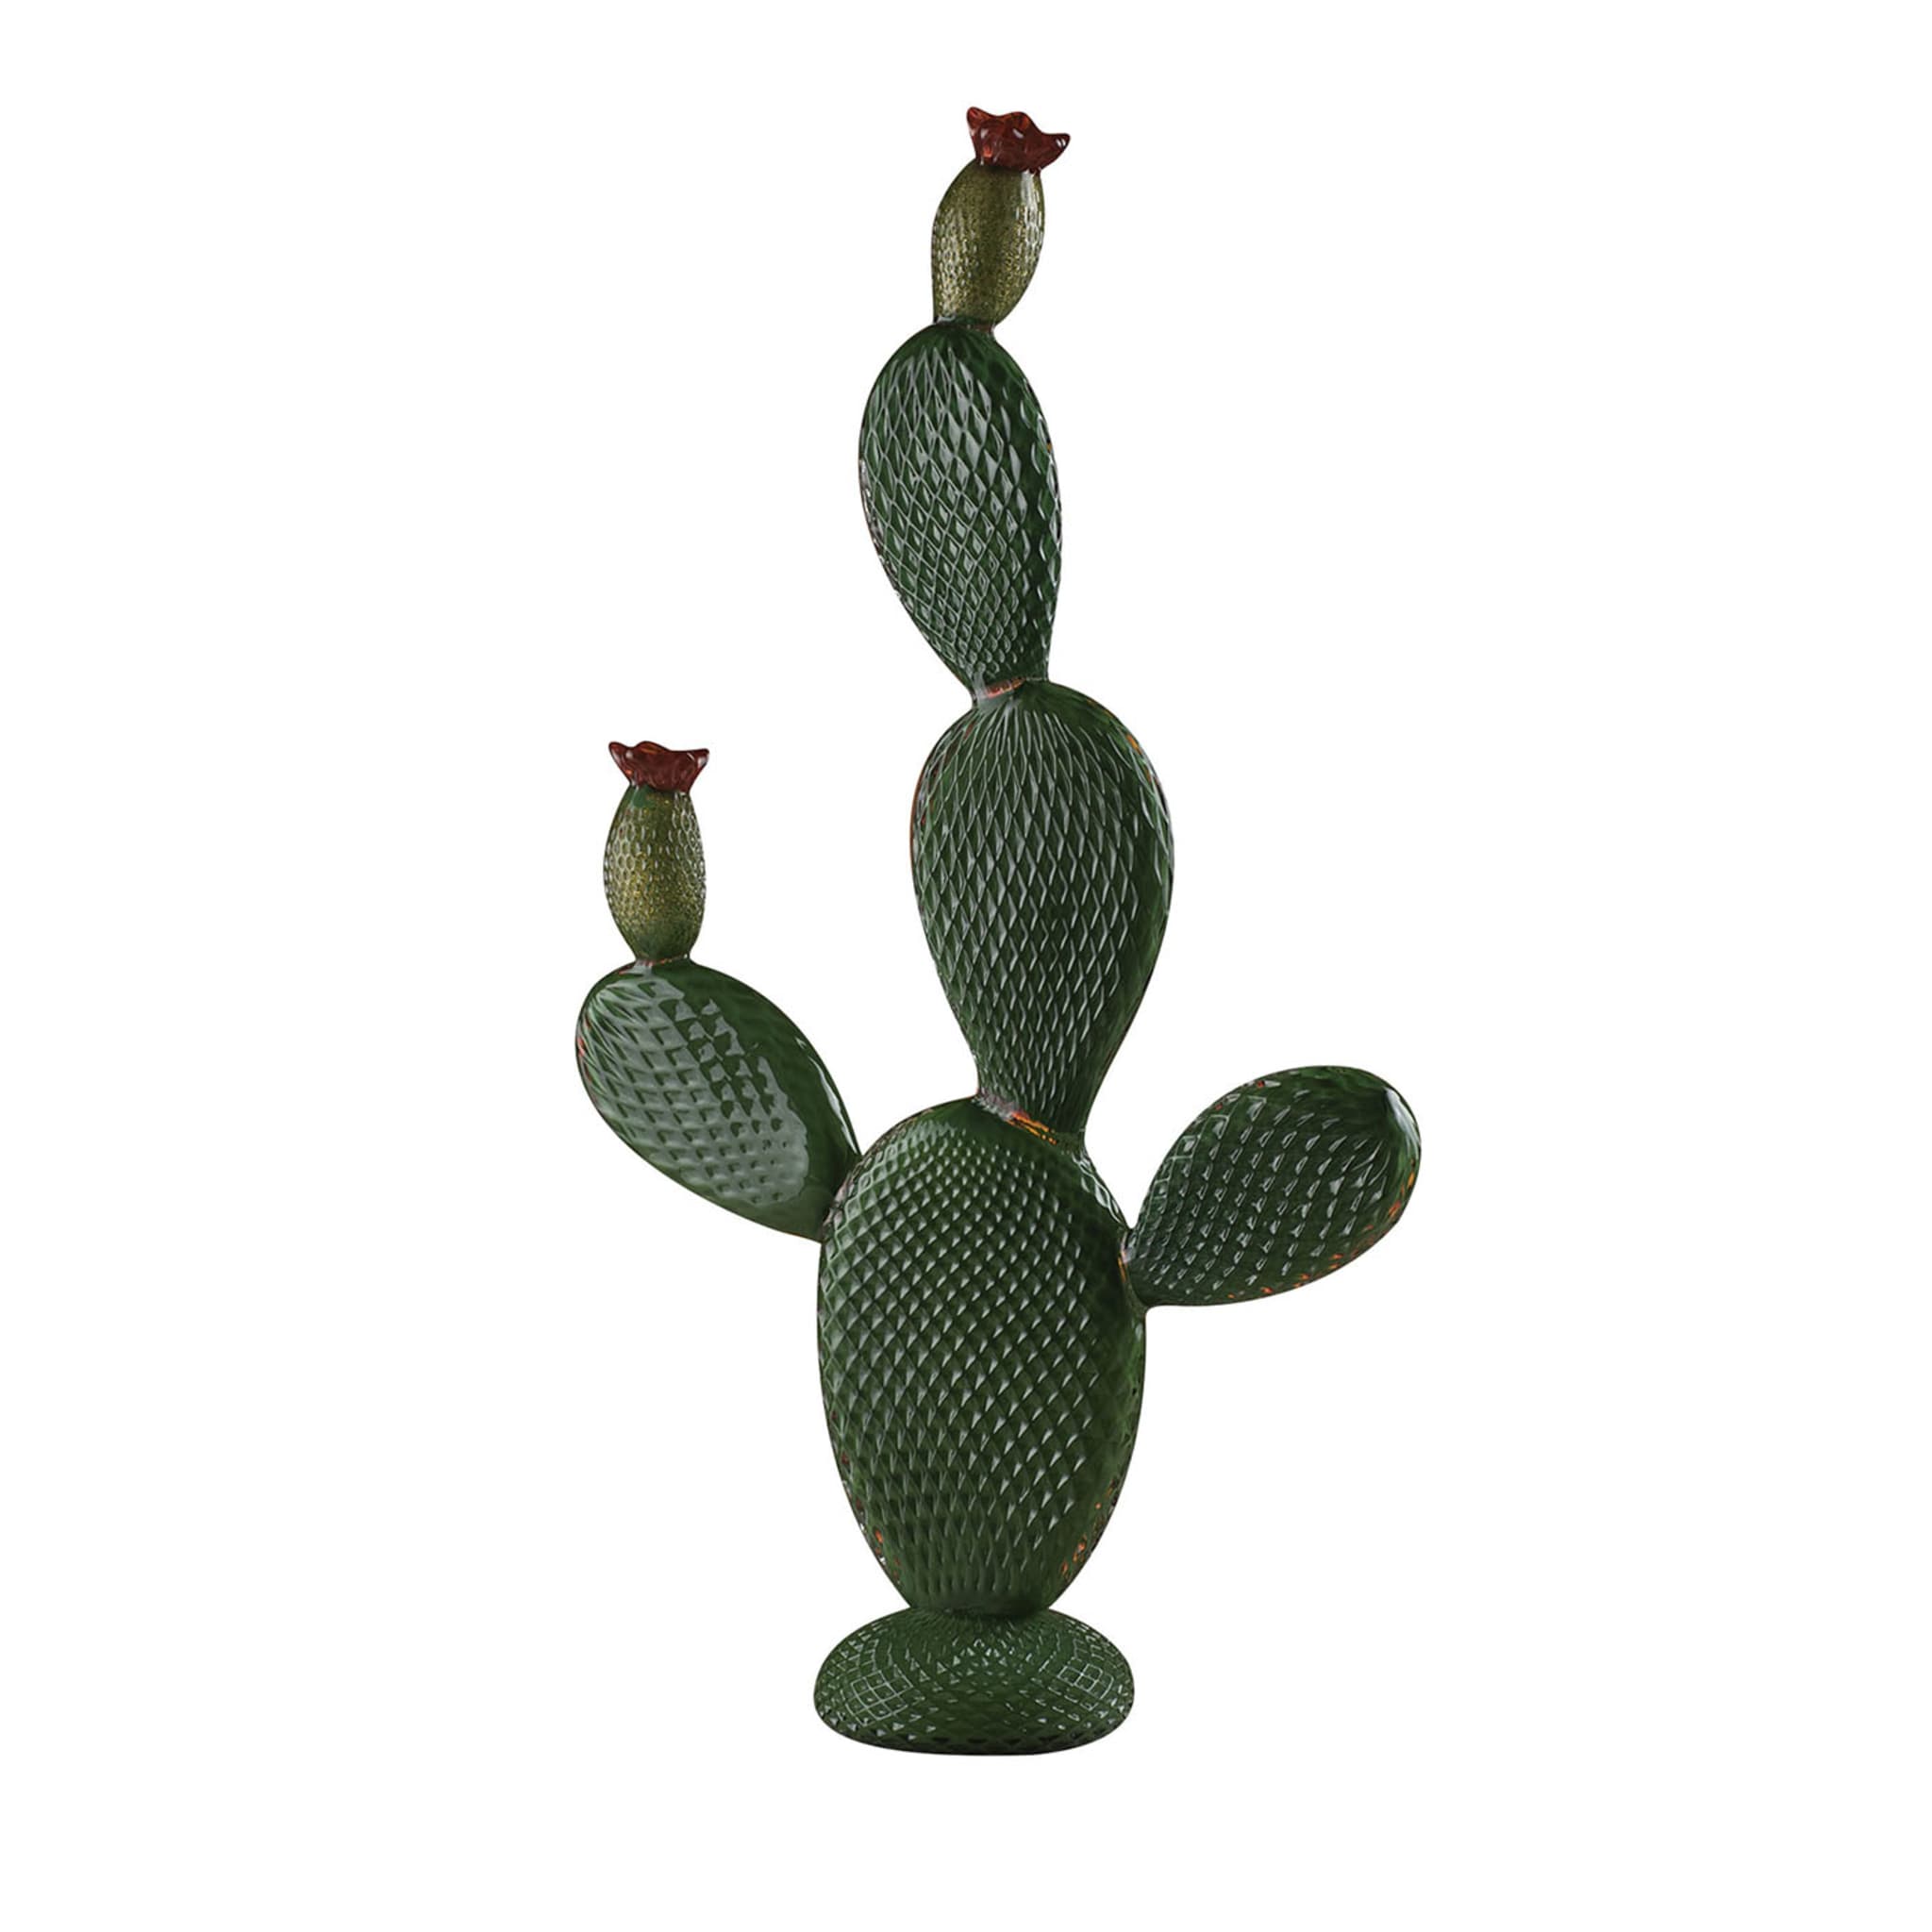 Riesiger grüner Kaktus Skulptur - Hauptansicht